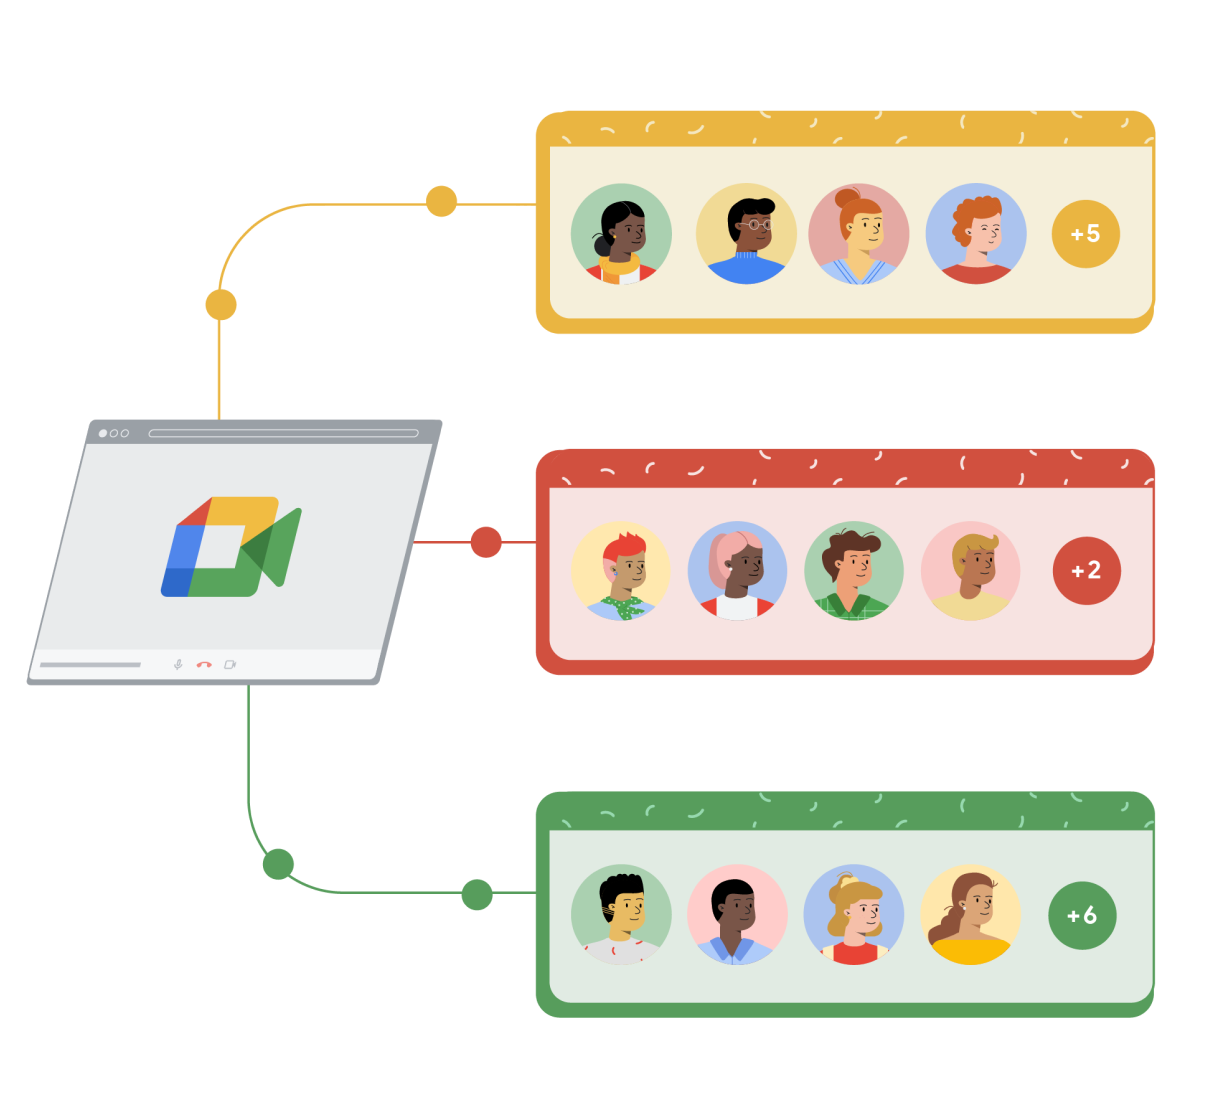 Et Google Meet-browservindue linker til tre separate rektangler i gul, rød og grøn. Hvert rektangel har fire tegneseriefigurer i cirkler og en femte cirkel til højre med et tilføjelsestegn og et tal, der repræsenterer yderligere deltagere i Google Meet-opkaldet.